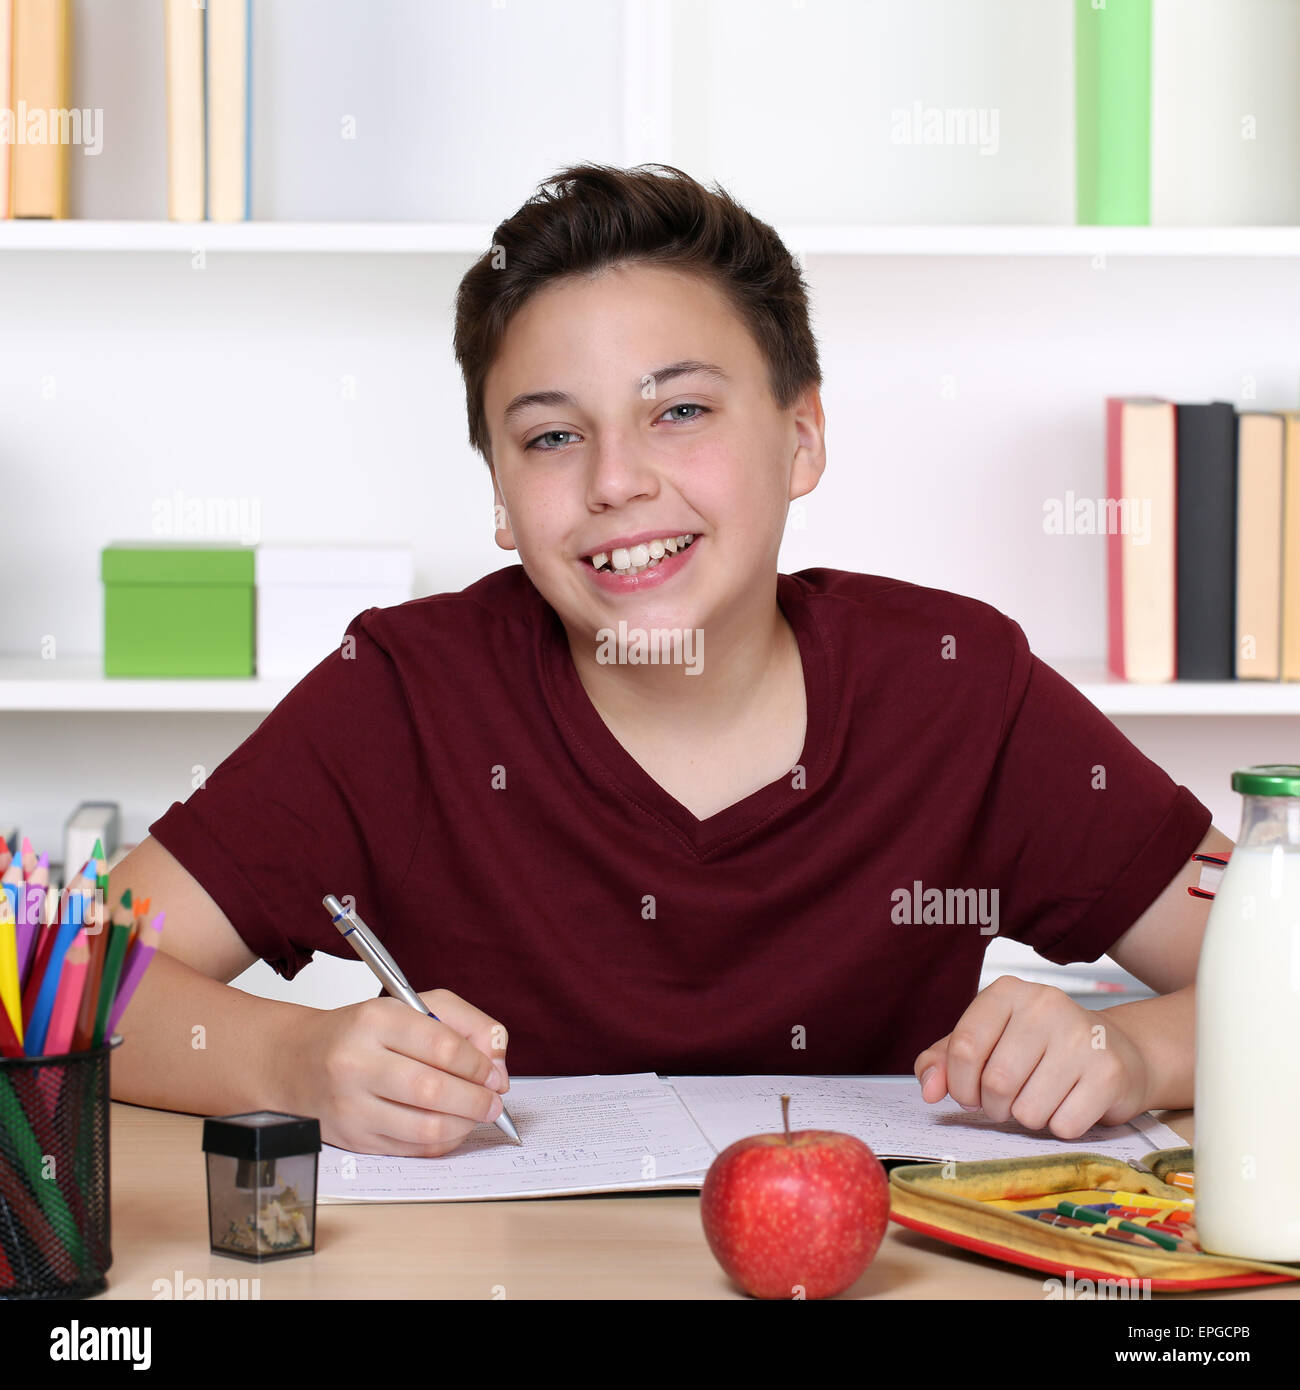 Lachender Junge beim Lernen in der Schule Stock Photo